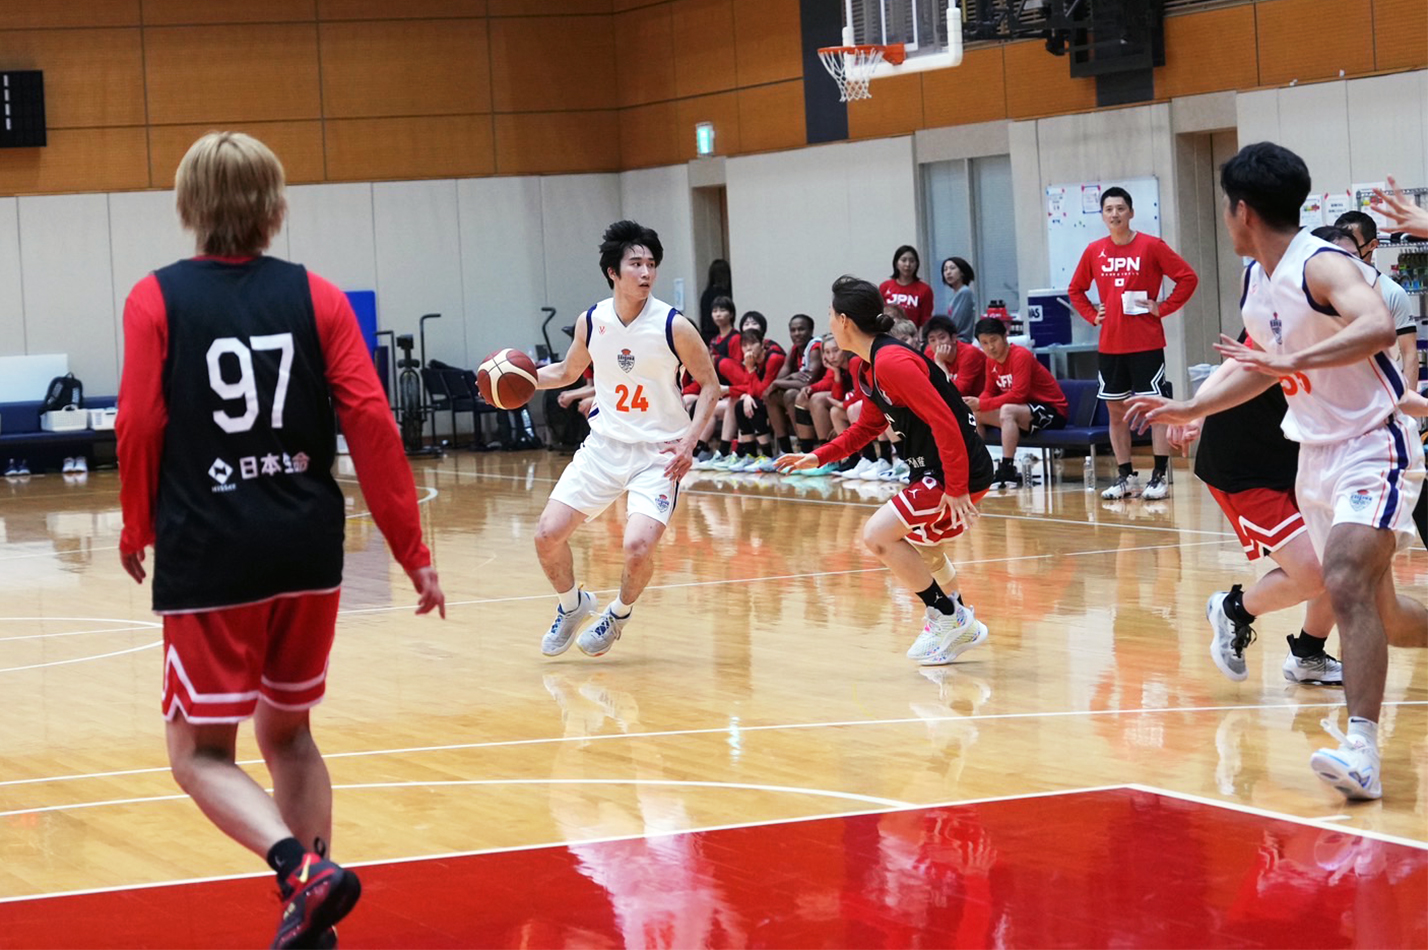 江戸川大学男子バスケットボール部が女子日本代表チームと練習ゲーム